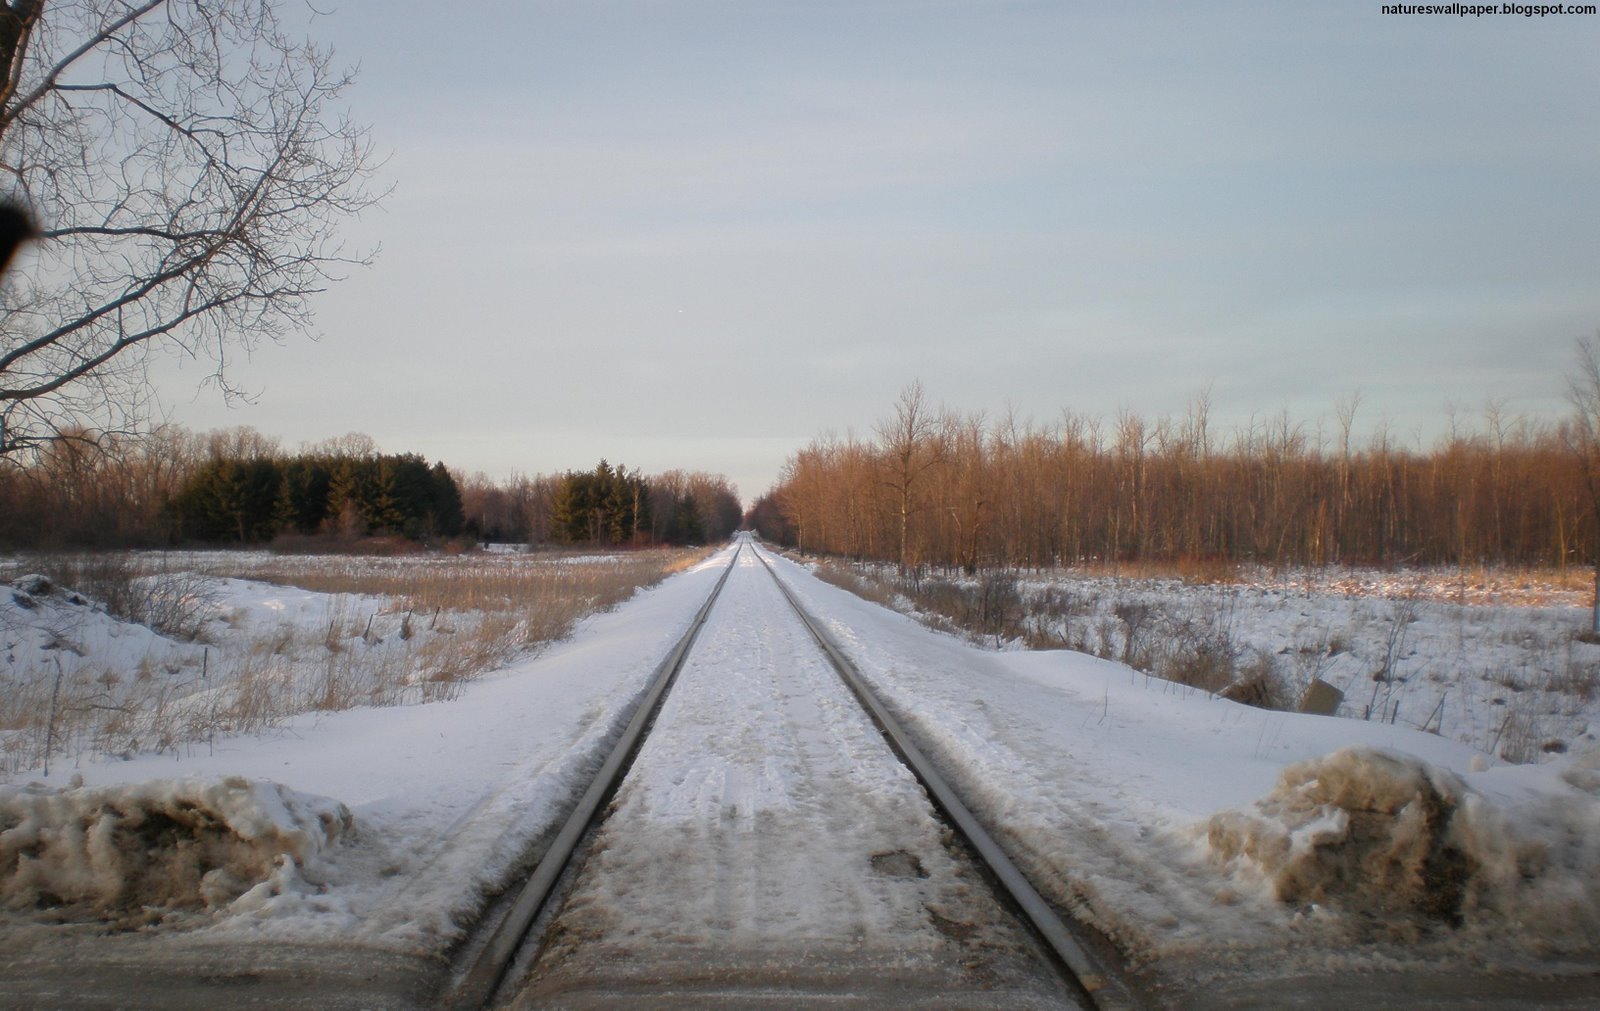 [Looking+Down+The+Rail+Road+Tracks+In+Wintertime.jpg]